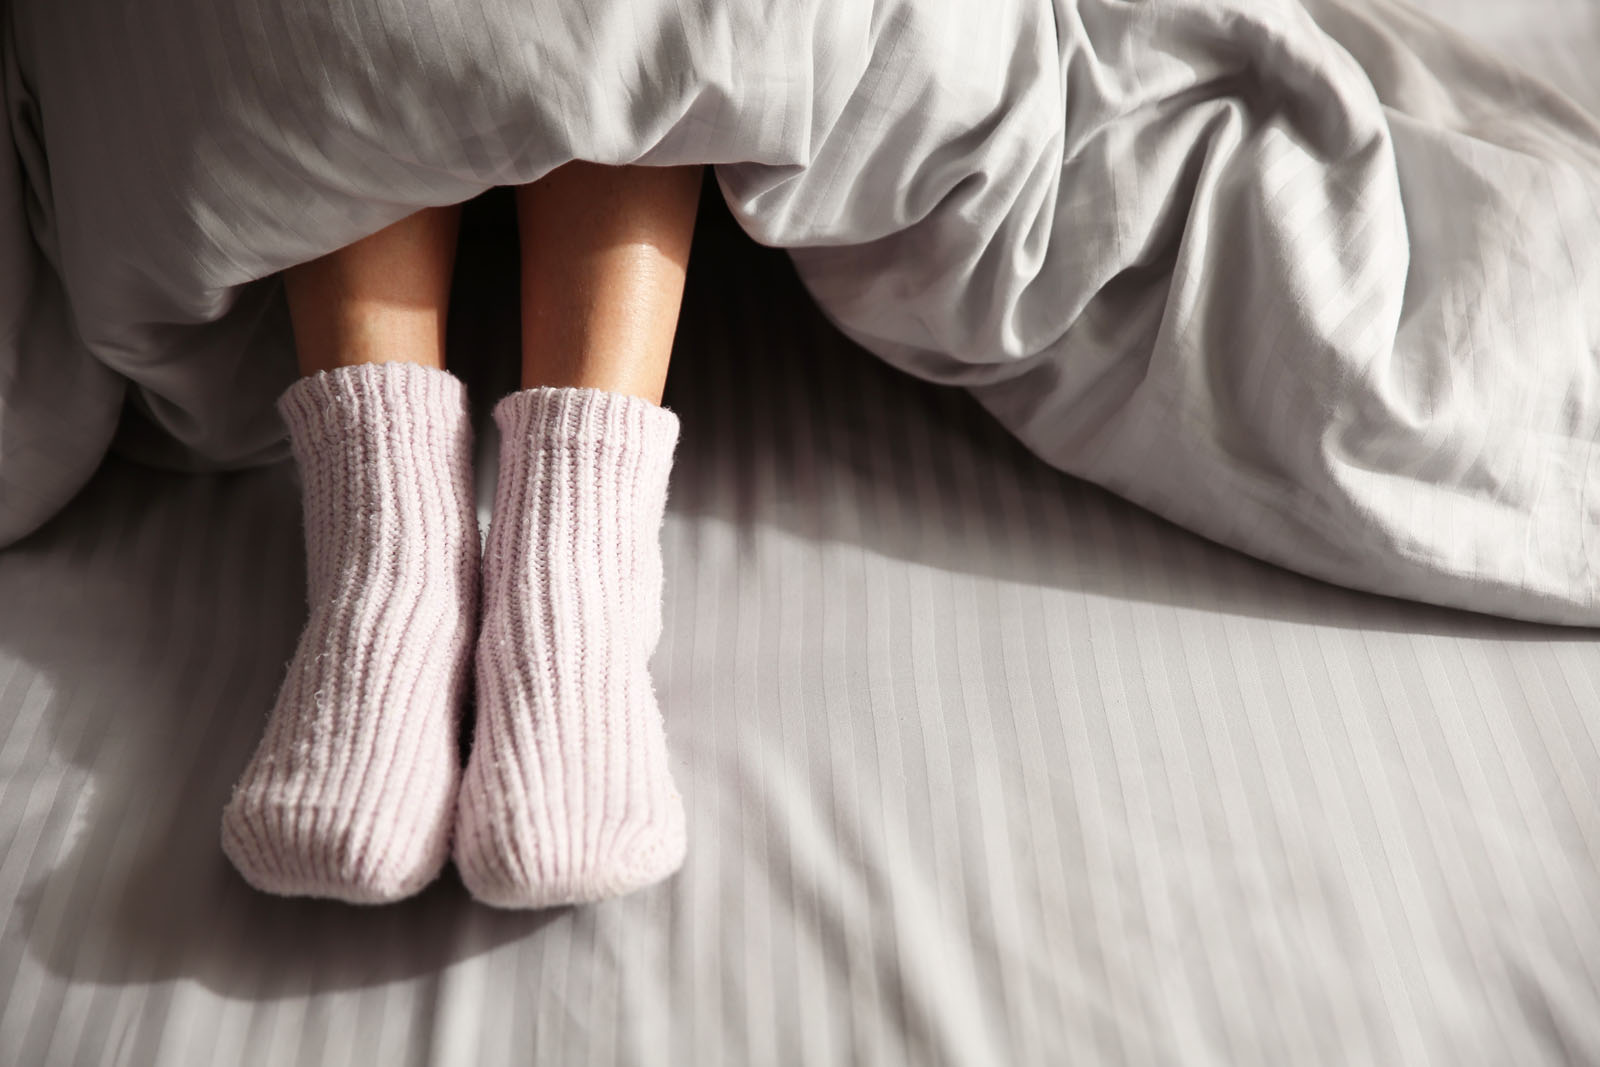 Spaní s ponožkami jaké přináší benefity